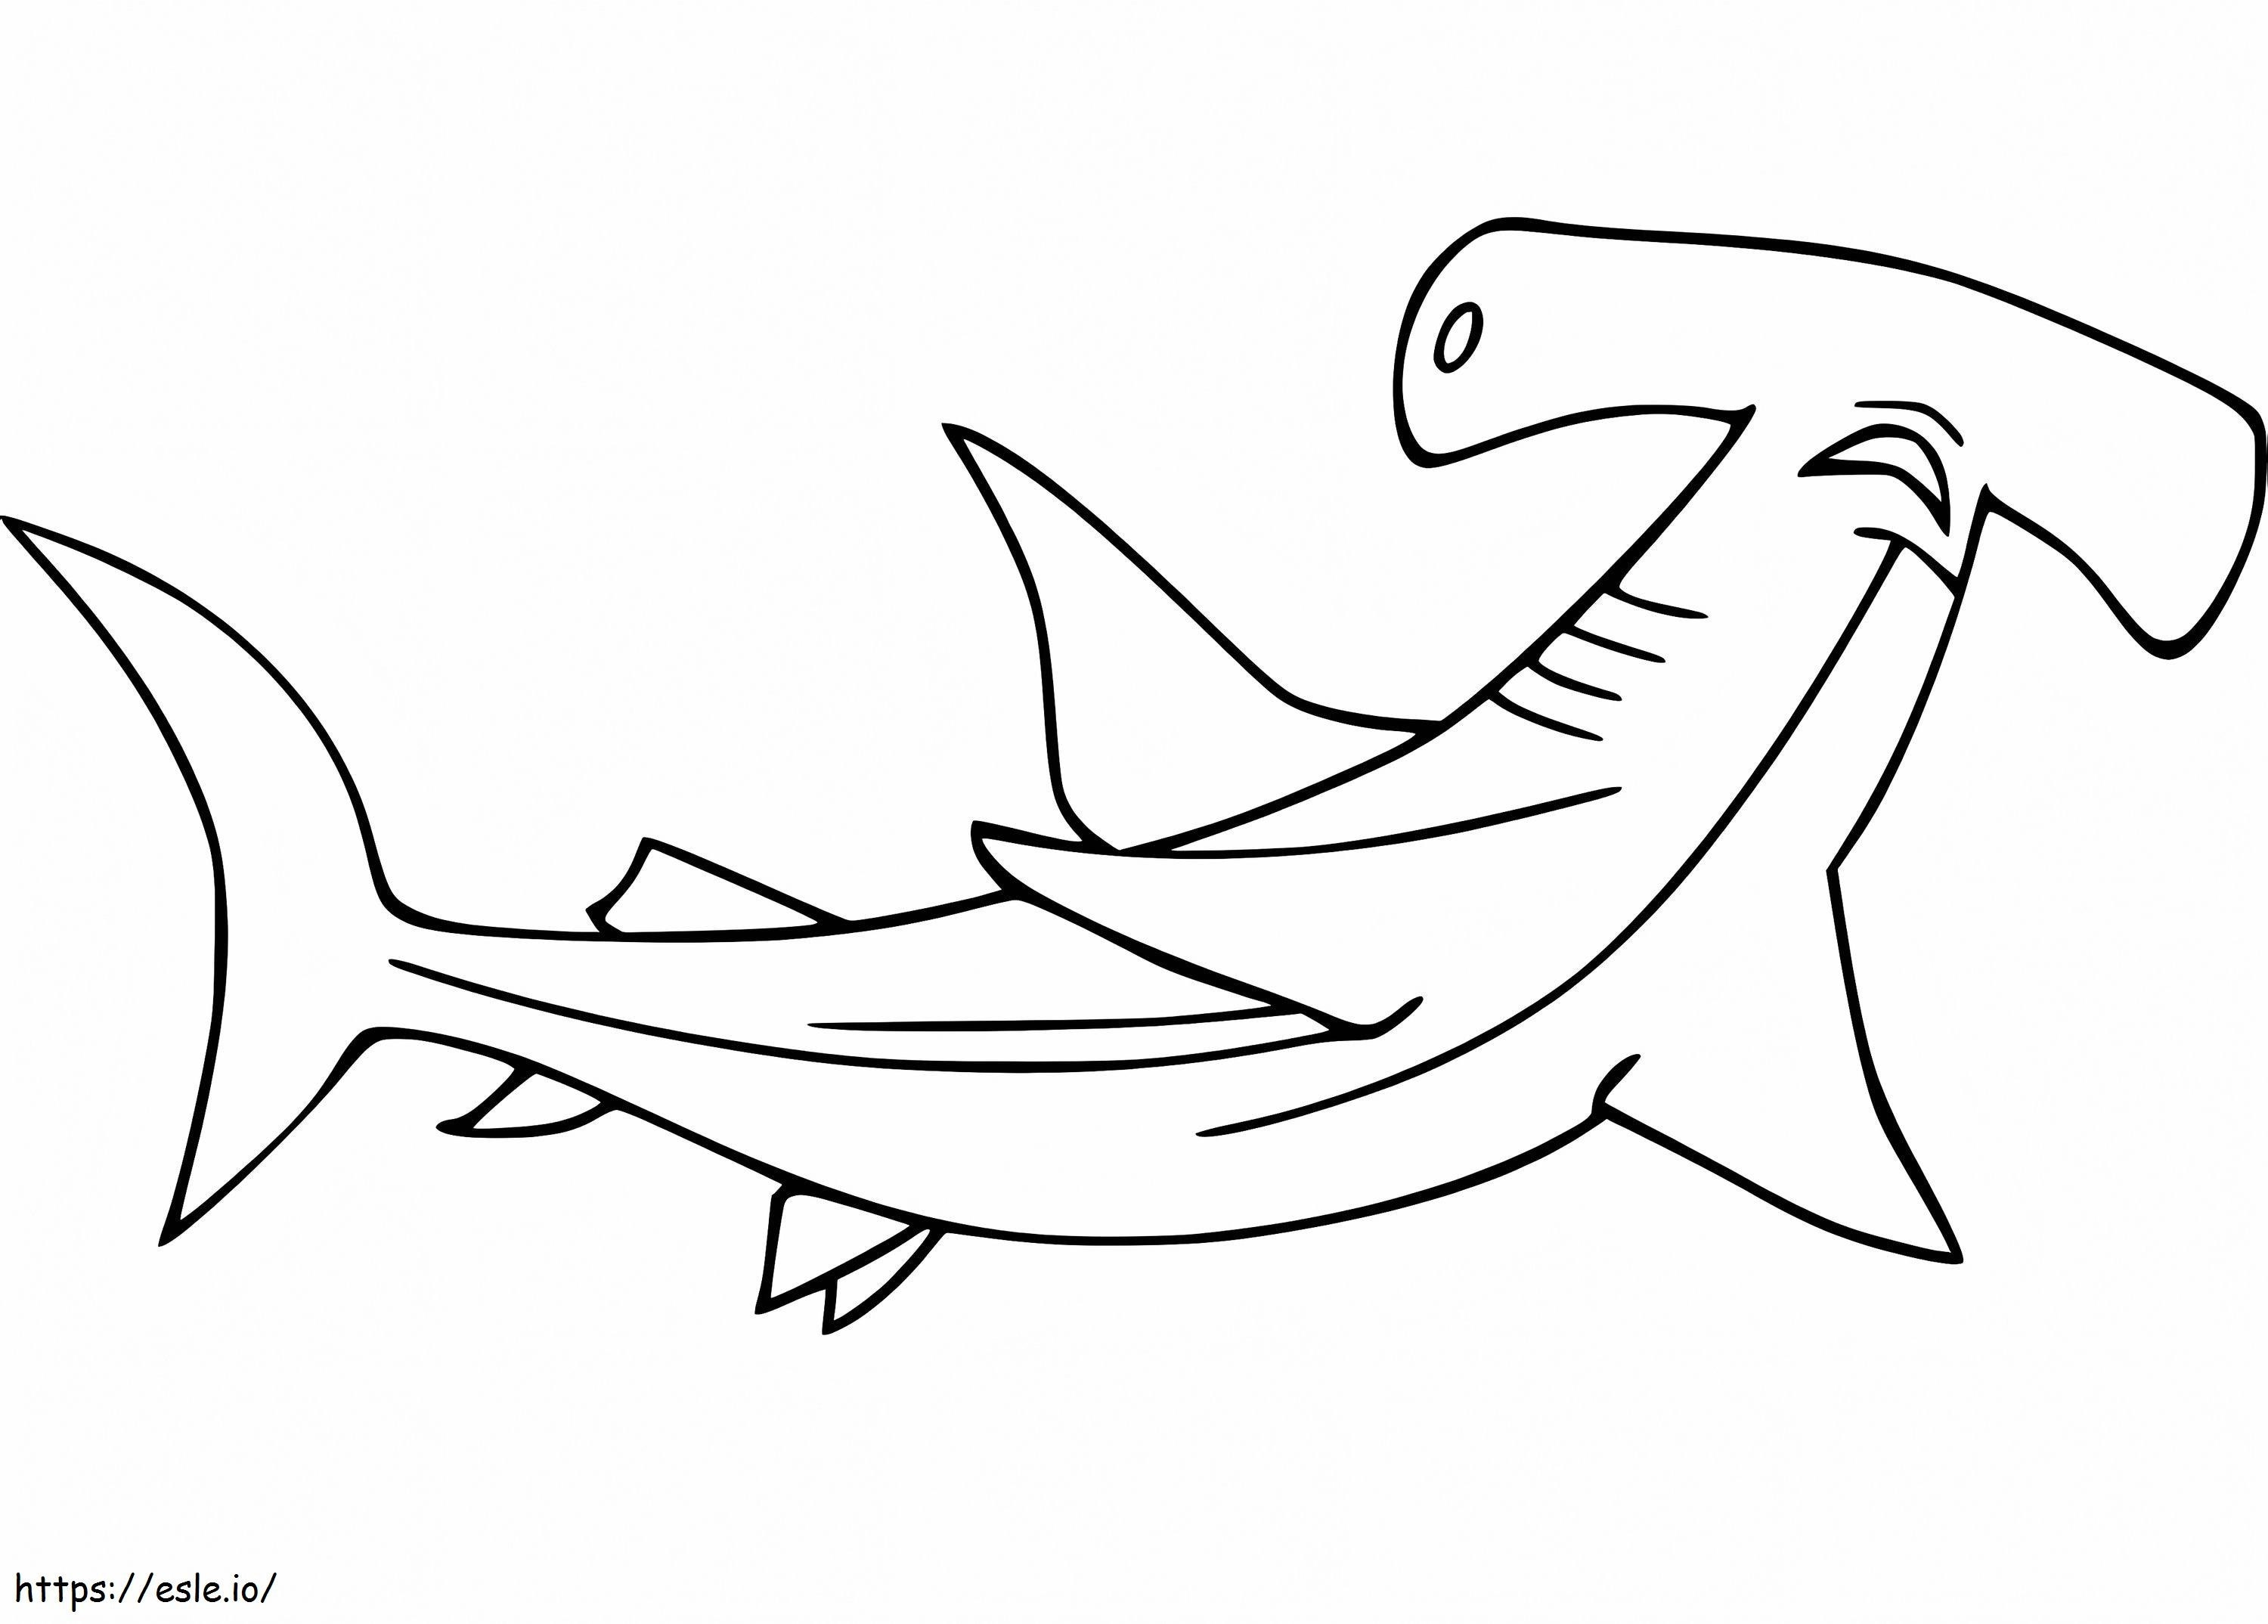 Um tubarão-martelo para colorir